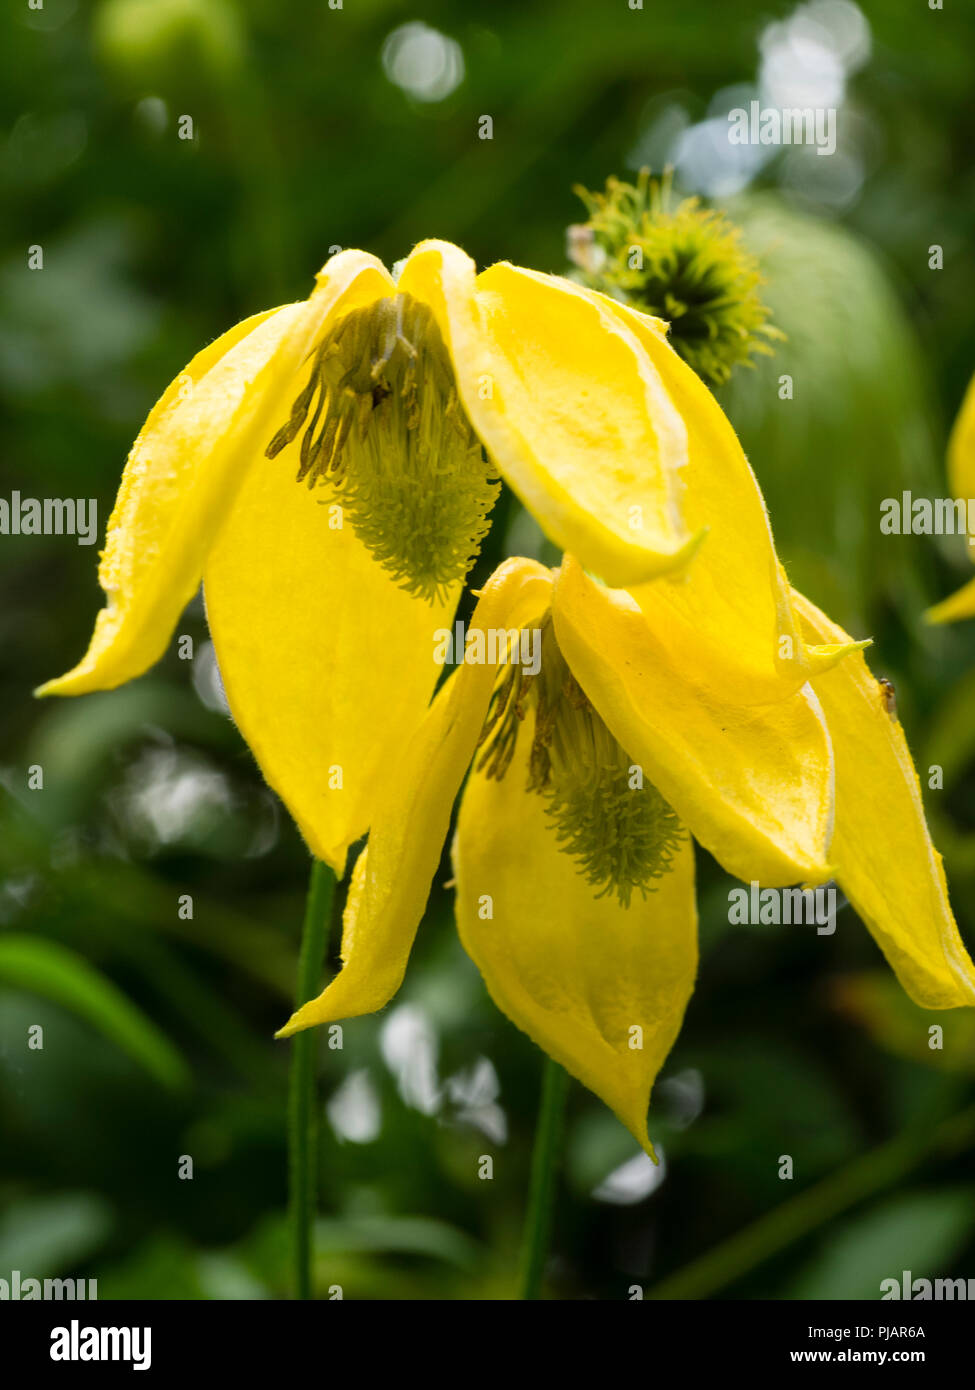 Gelbe Glocke Blumen Der winterharte Kletterpflanze, Clematis tangutica 'Lambton Park'. Blumen sind größer als die Arten. Stockfoto